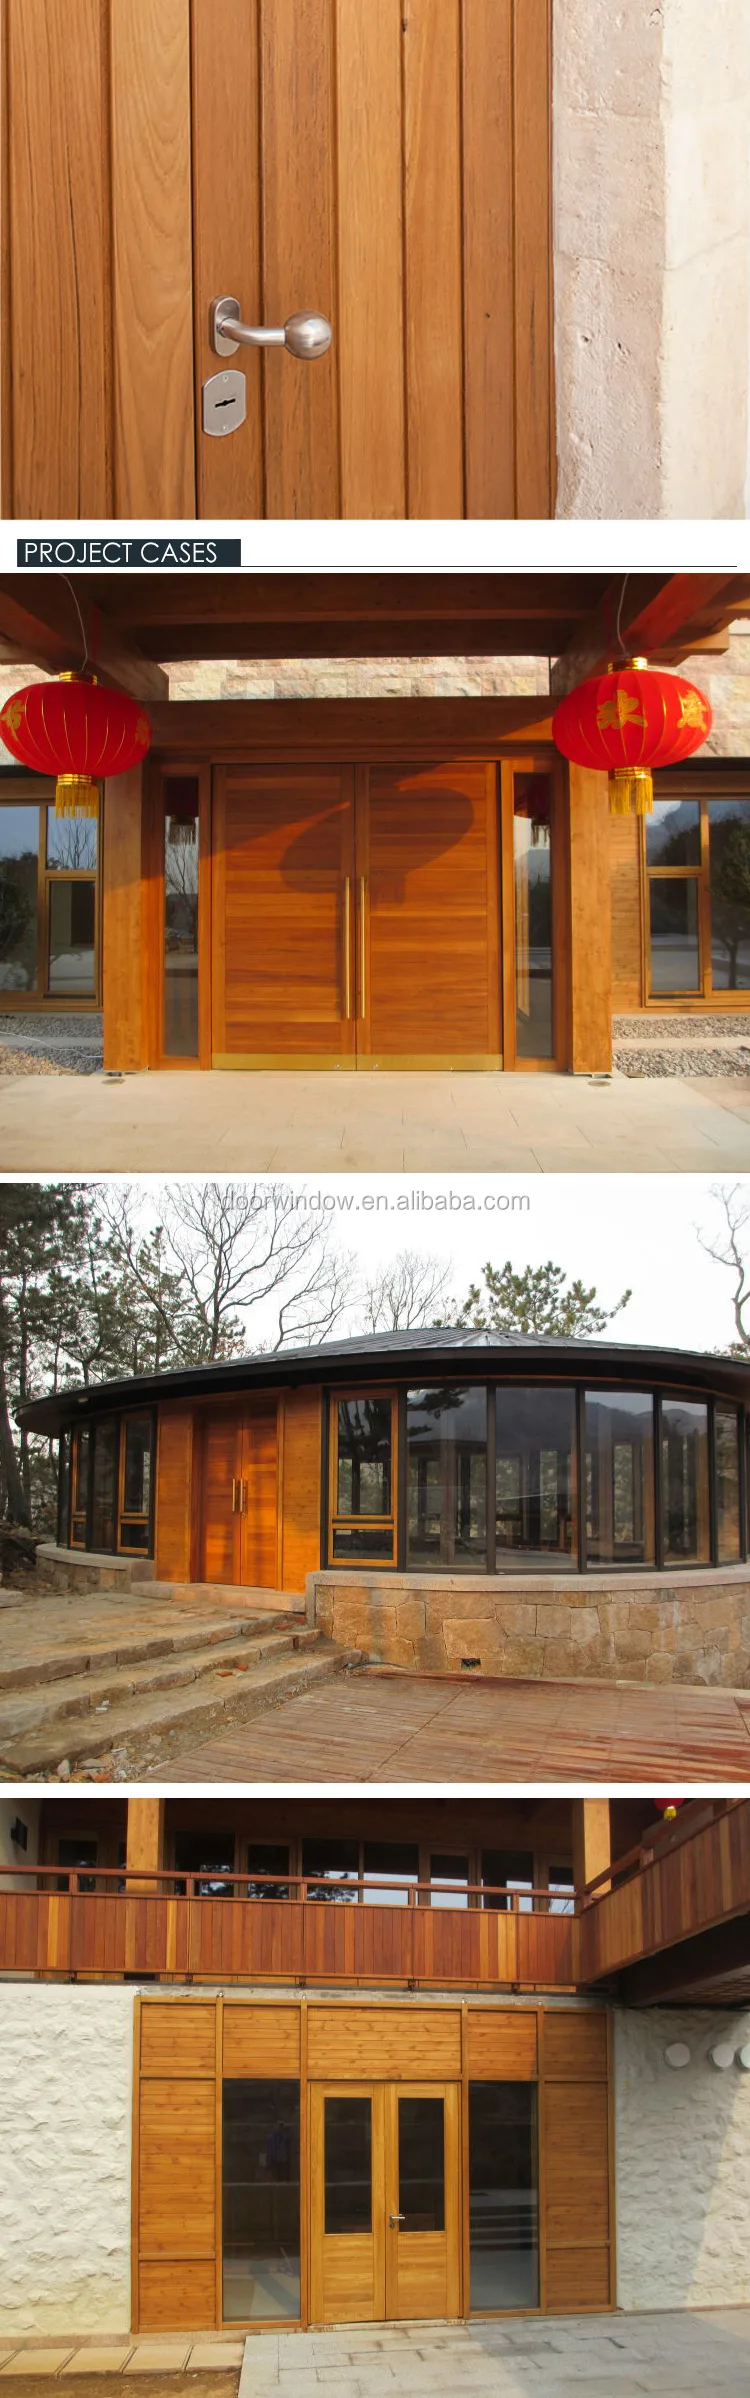 Burma teak wood doors single leaf front door designs